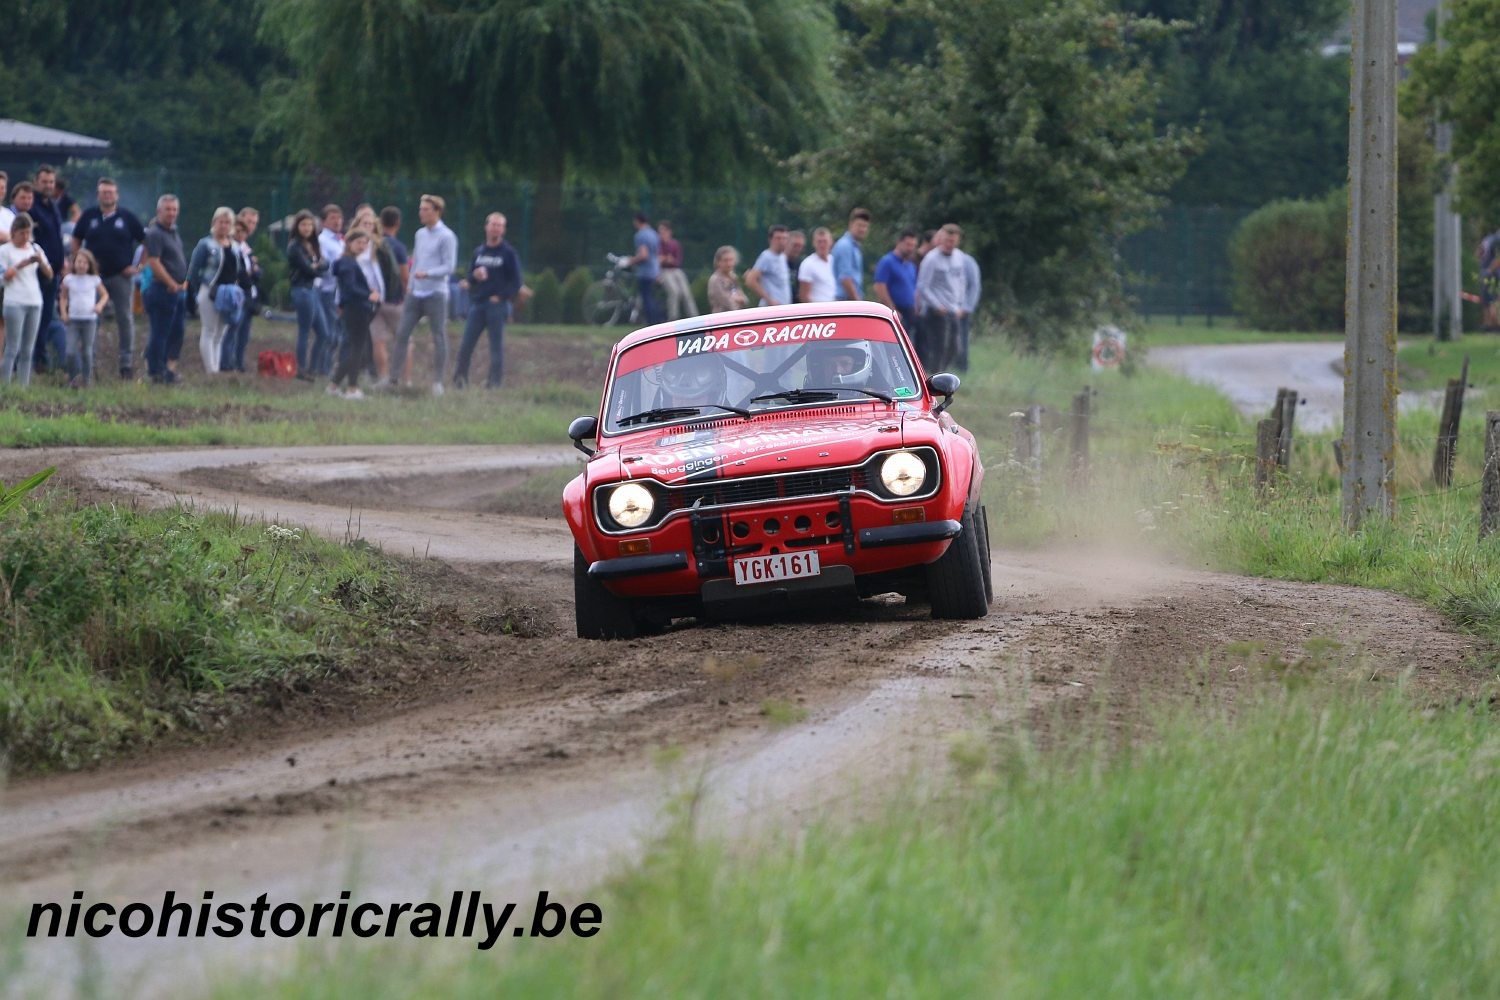 Verslag Rally van Staden (Koen Verhaeghe – Jochen Vandersarren):